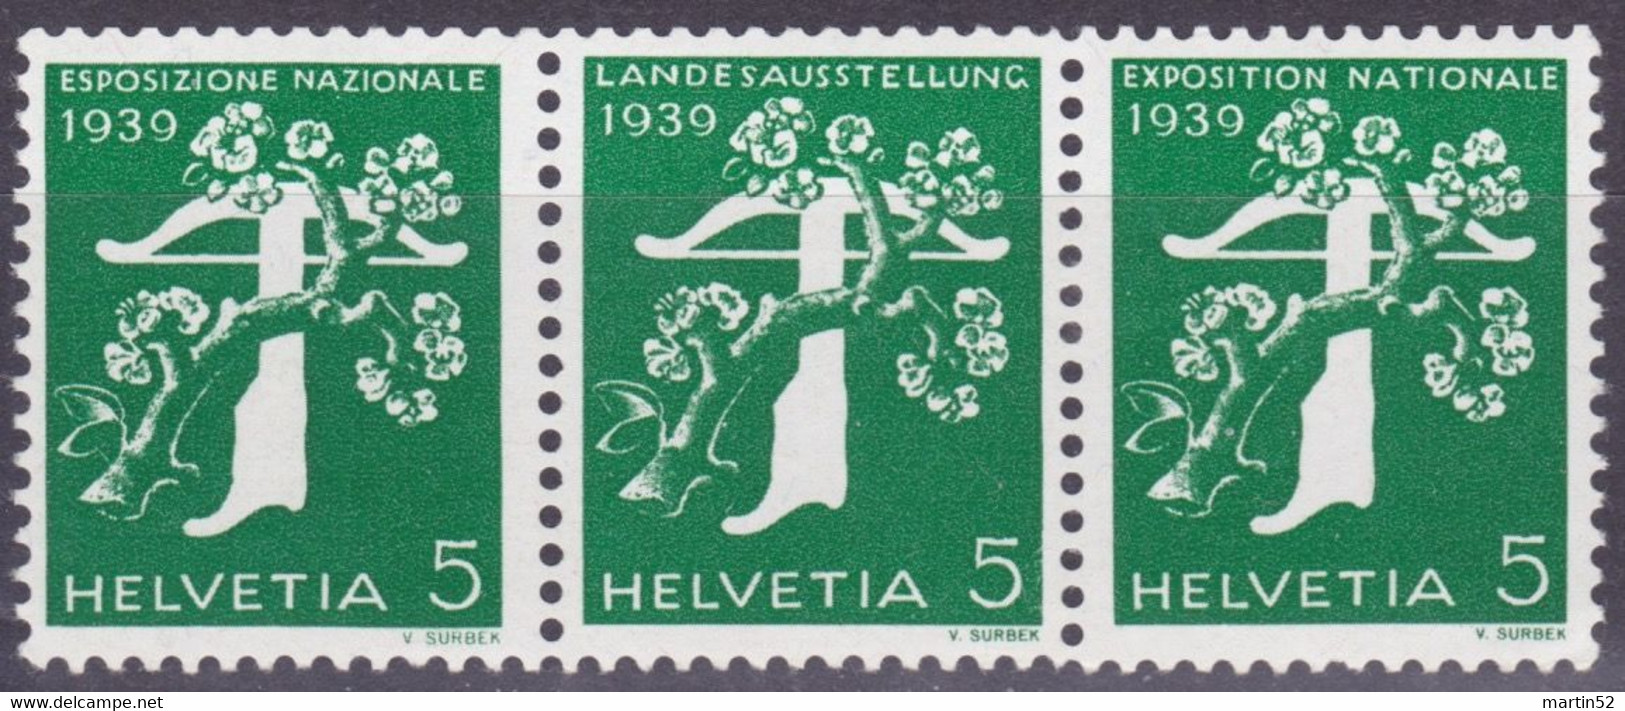 Schweiz Suisse 1939: Zusammendruck Se-tenant Zu Z25c Mi W12 ** Mit Nr. Avec N° L7295 Postfrisch MNH (Zumstein CHF 21.00) - Franqueo